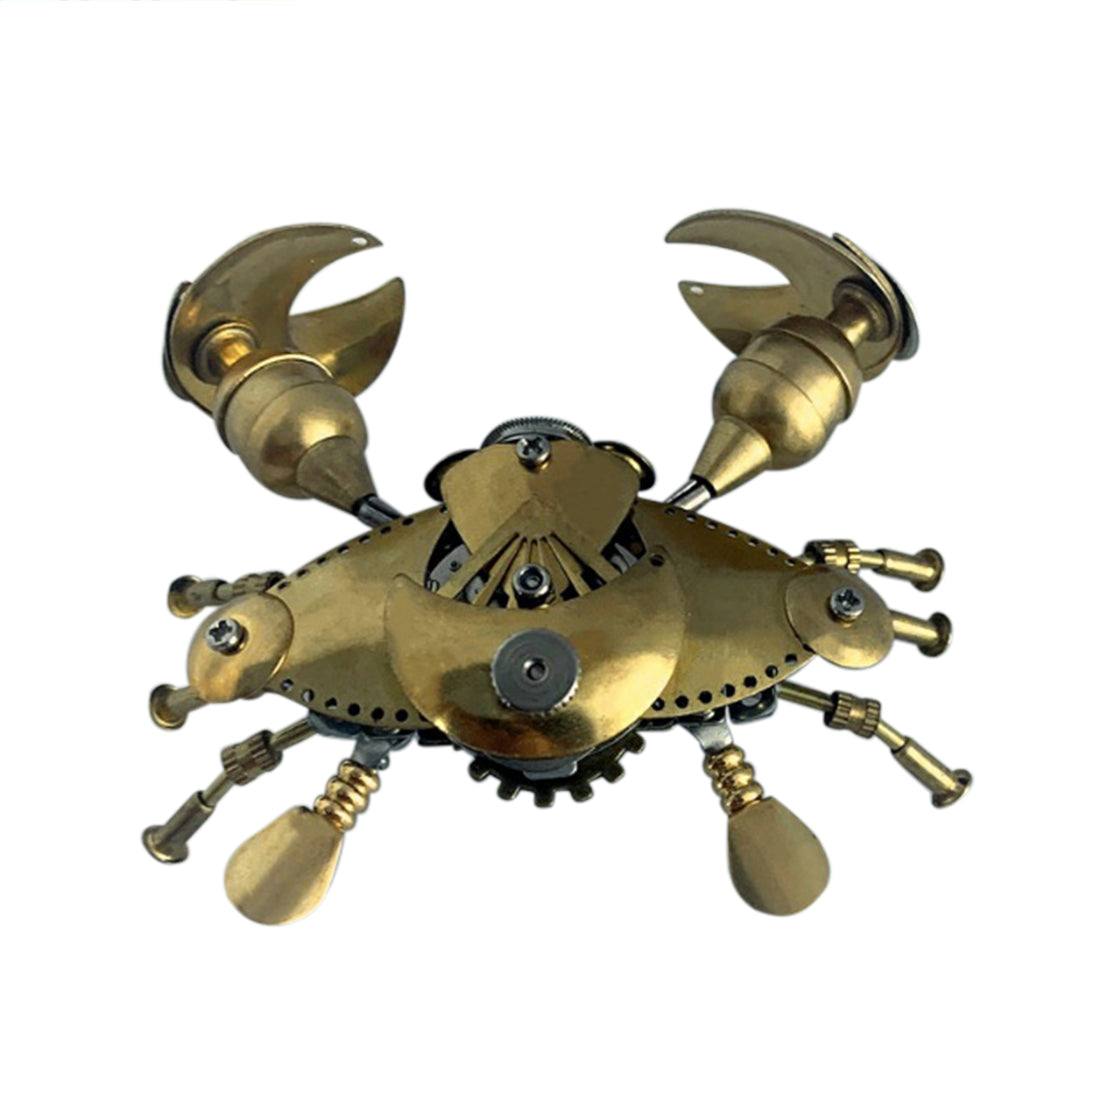 Crab Metal Steampunk Sculpture Model Handmade Assembled Crafts